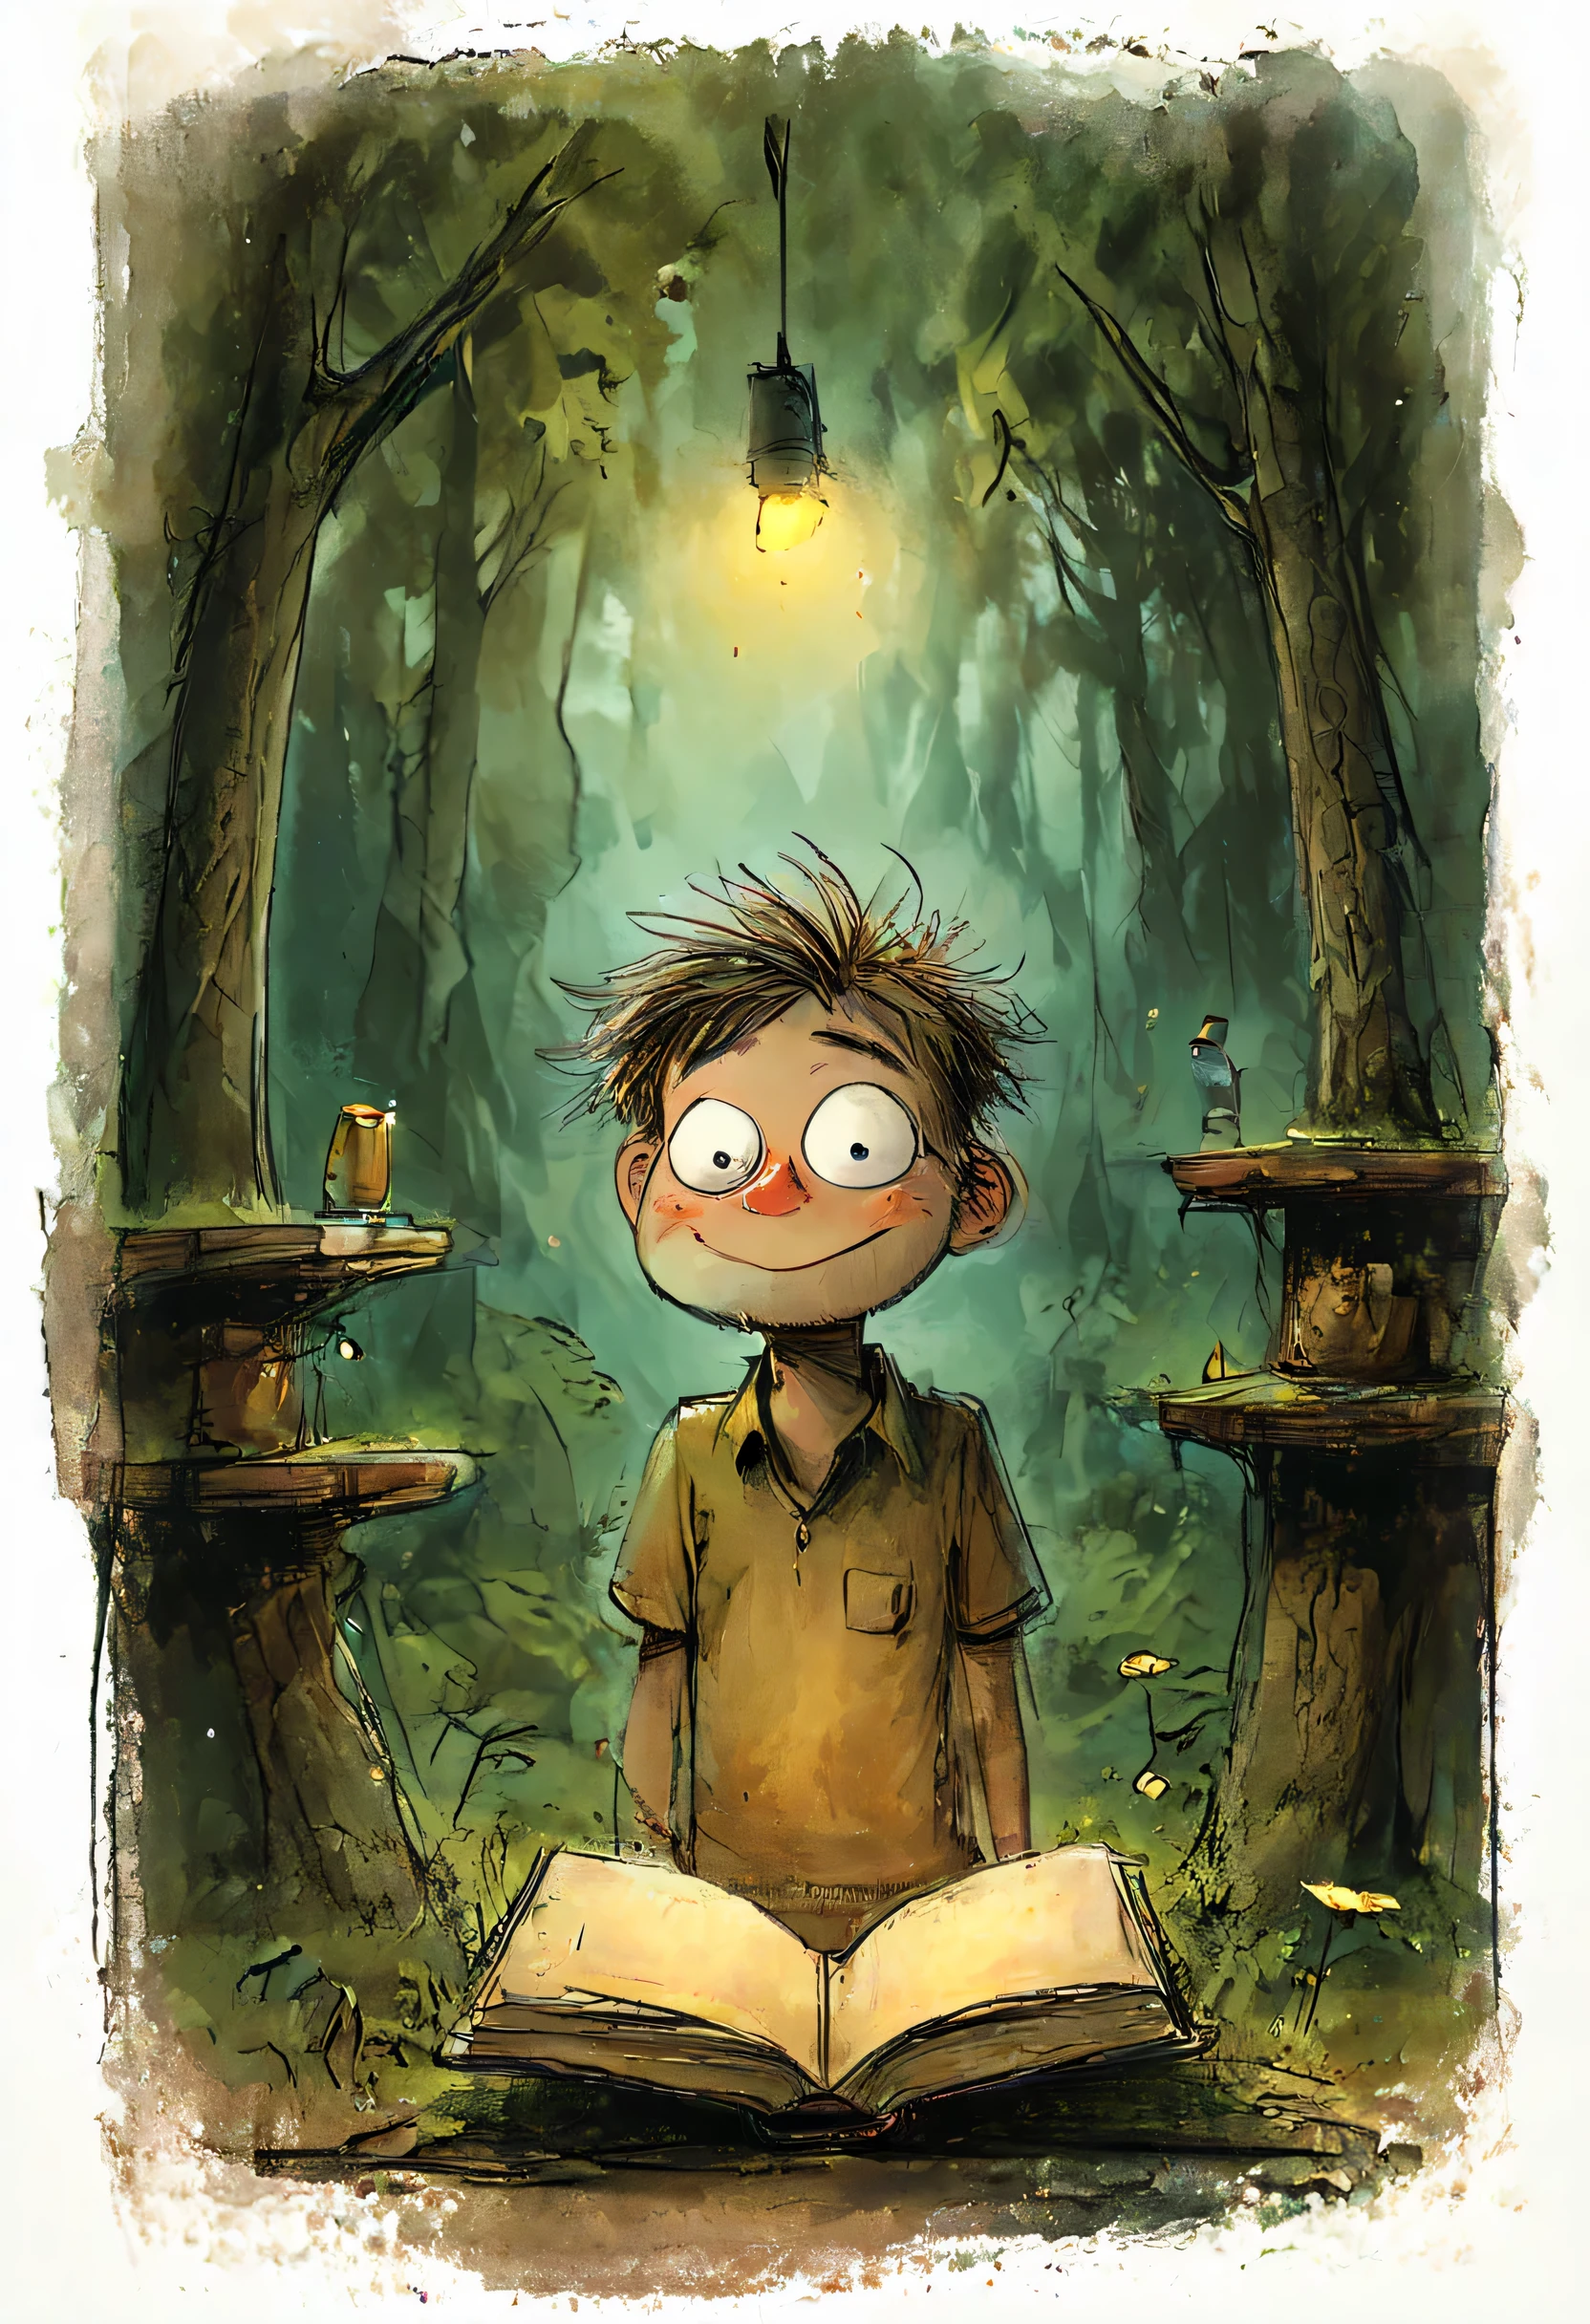 мальчик читает книгу в лесу, свет фонарика освещает окружающую среду, Высокая эстетичность, Стиль Дома Герцфельдта, Боско, Габриэль Пачеко